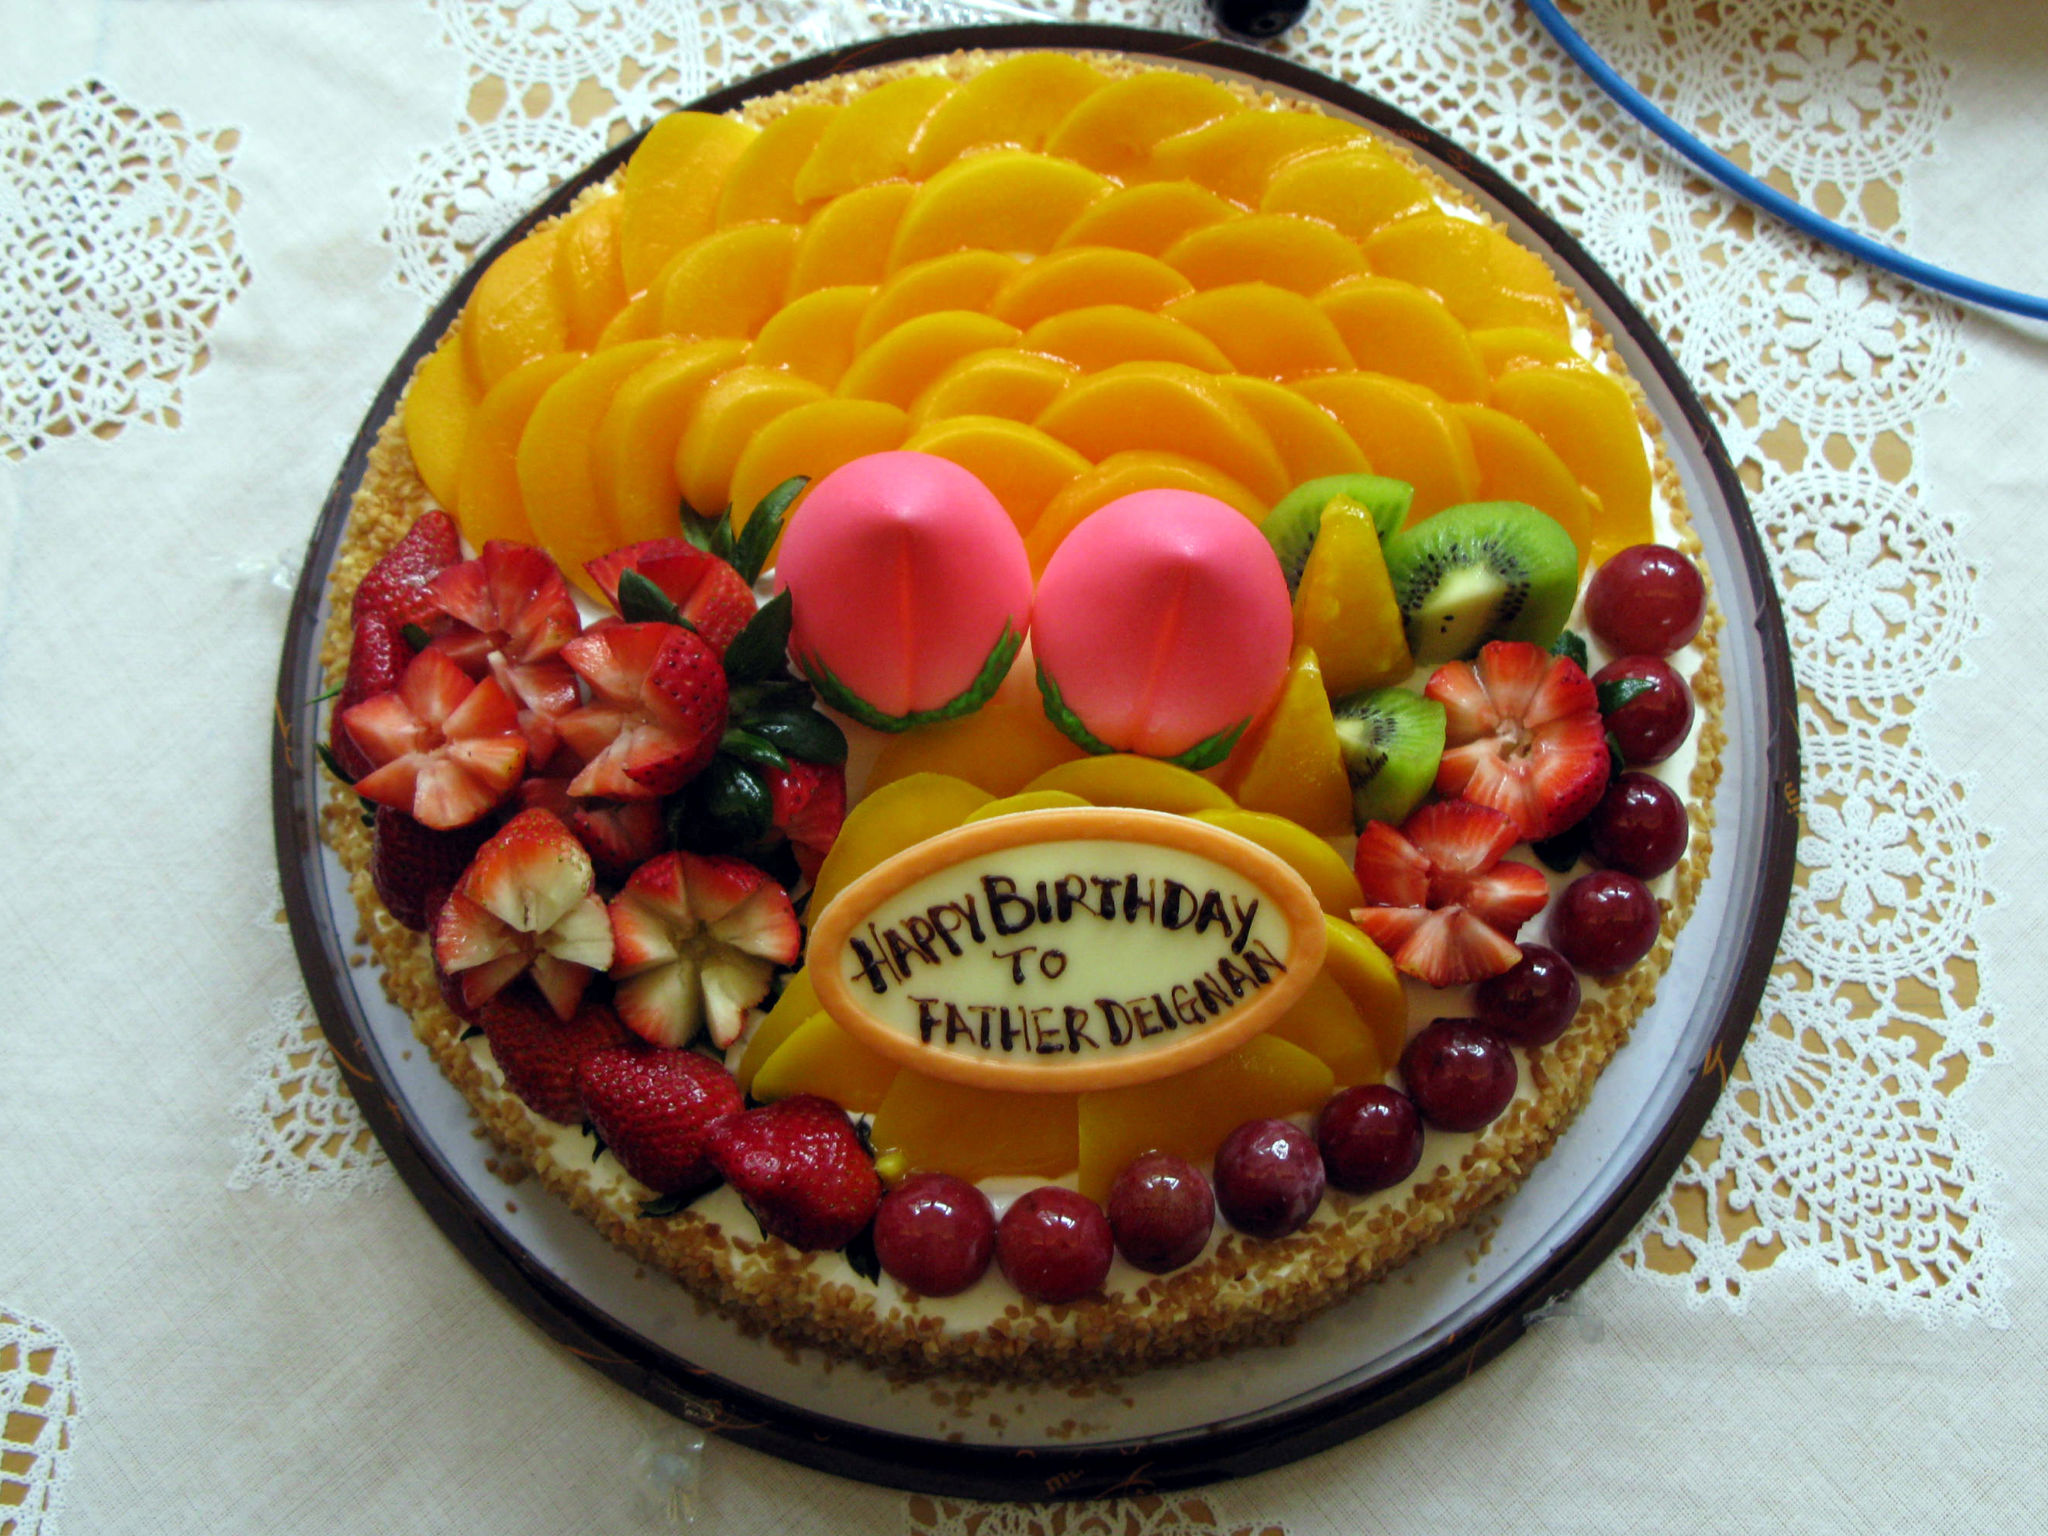 06 Bithday cake